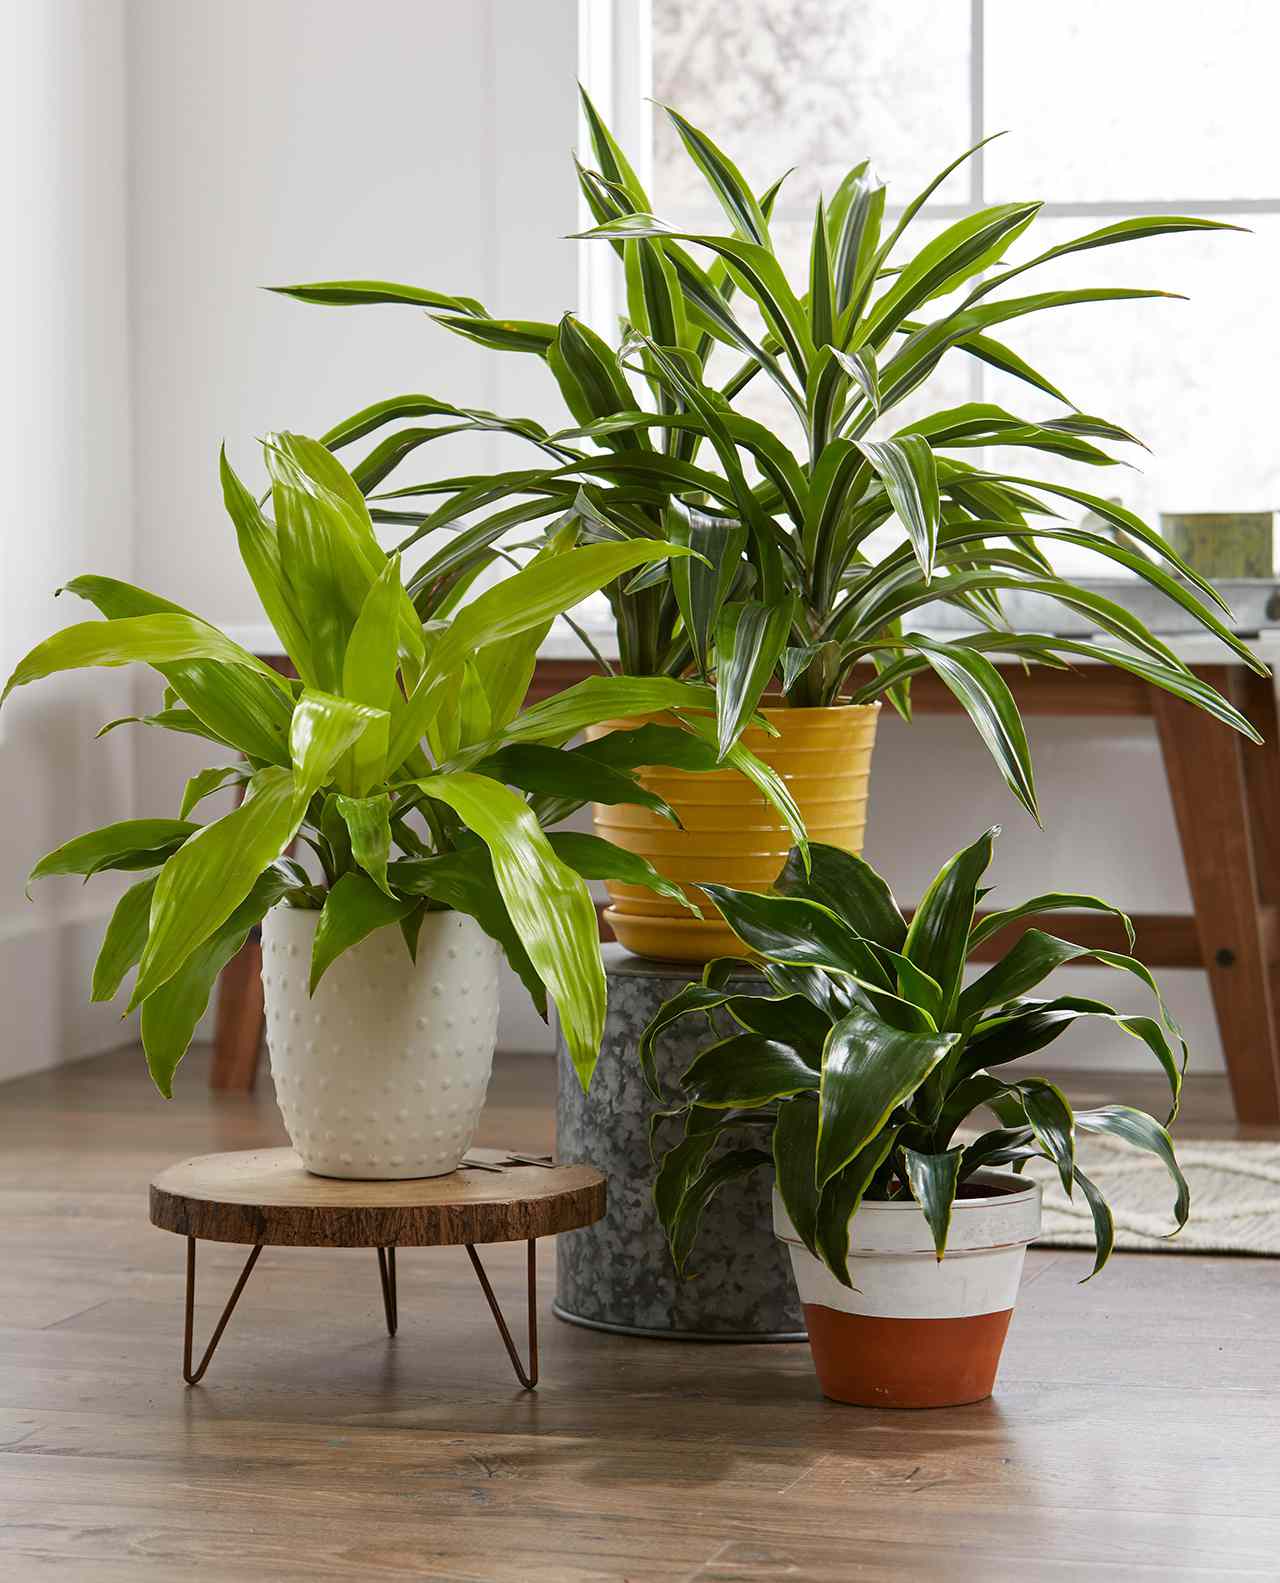 three indoor houseplants in decorative pots